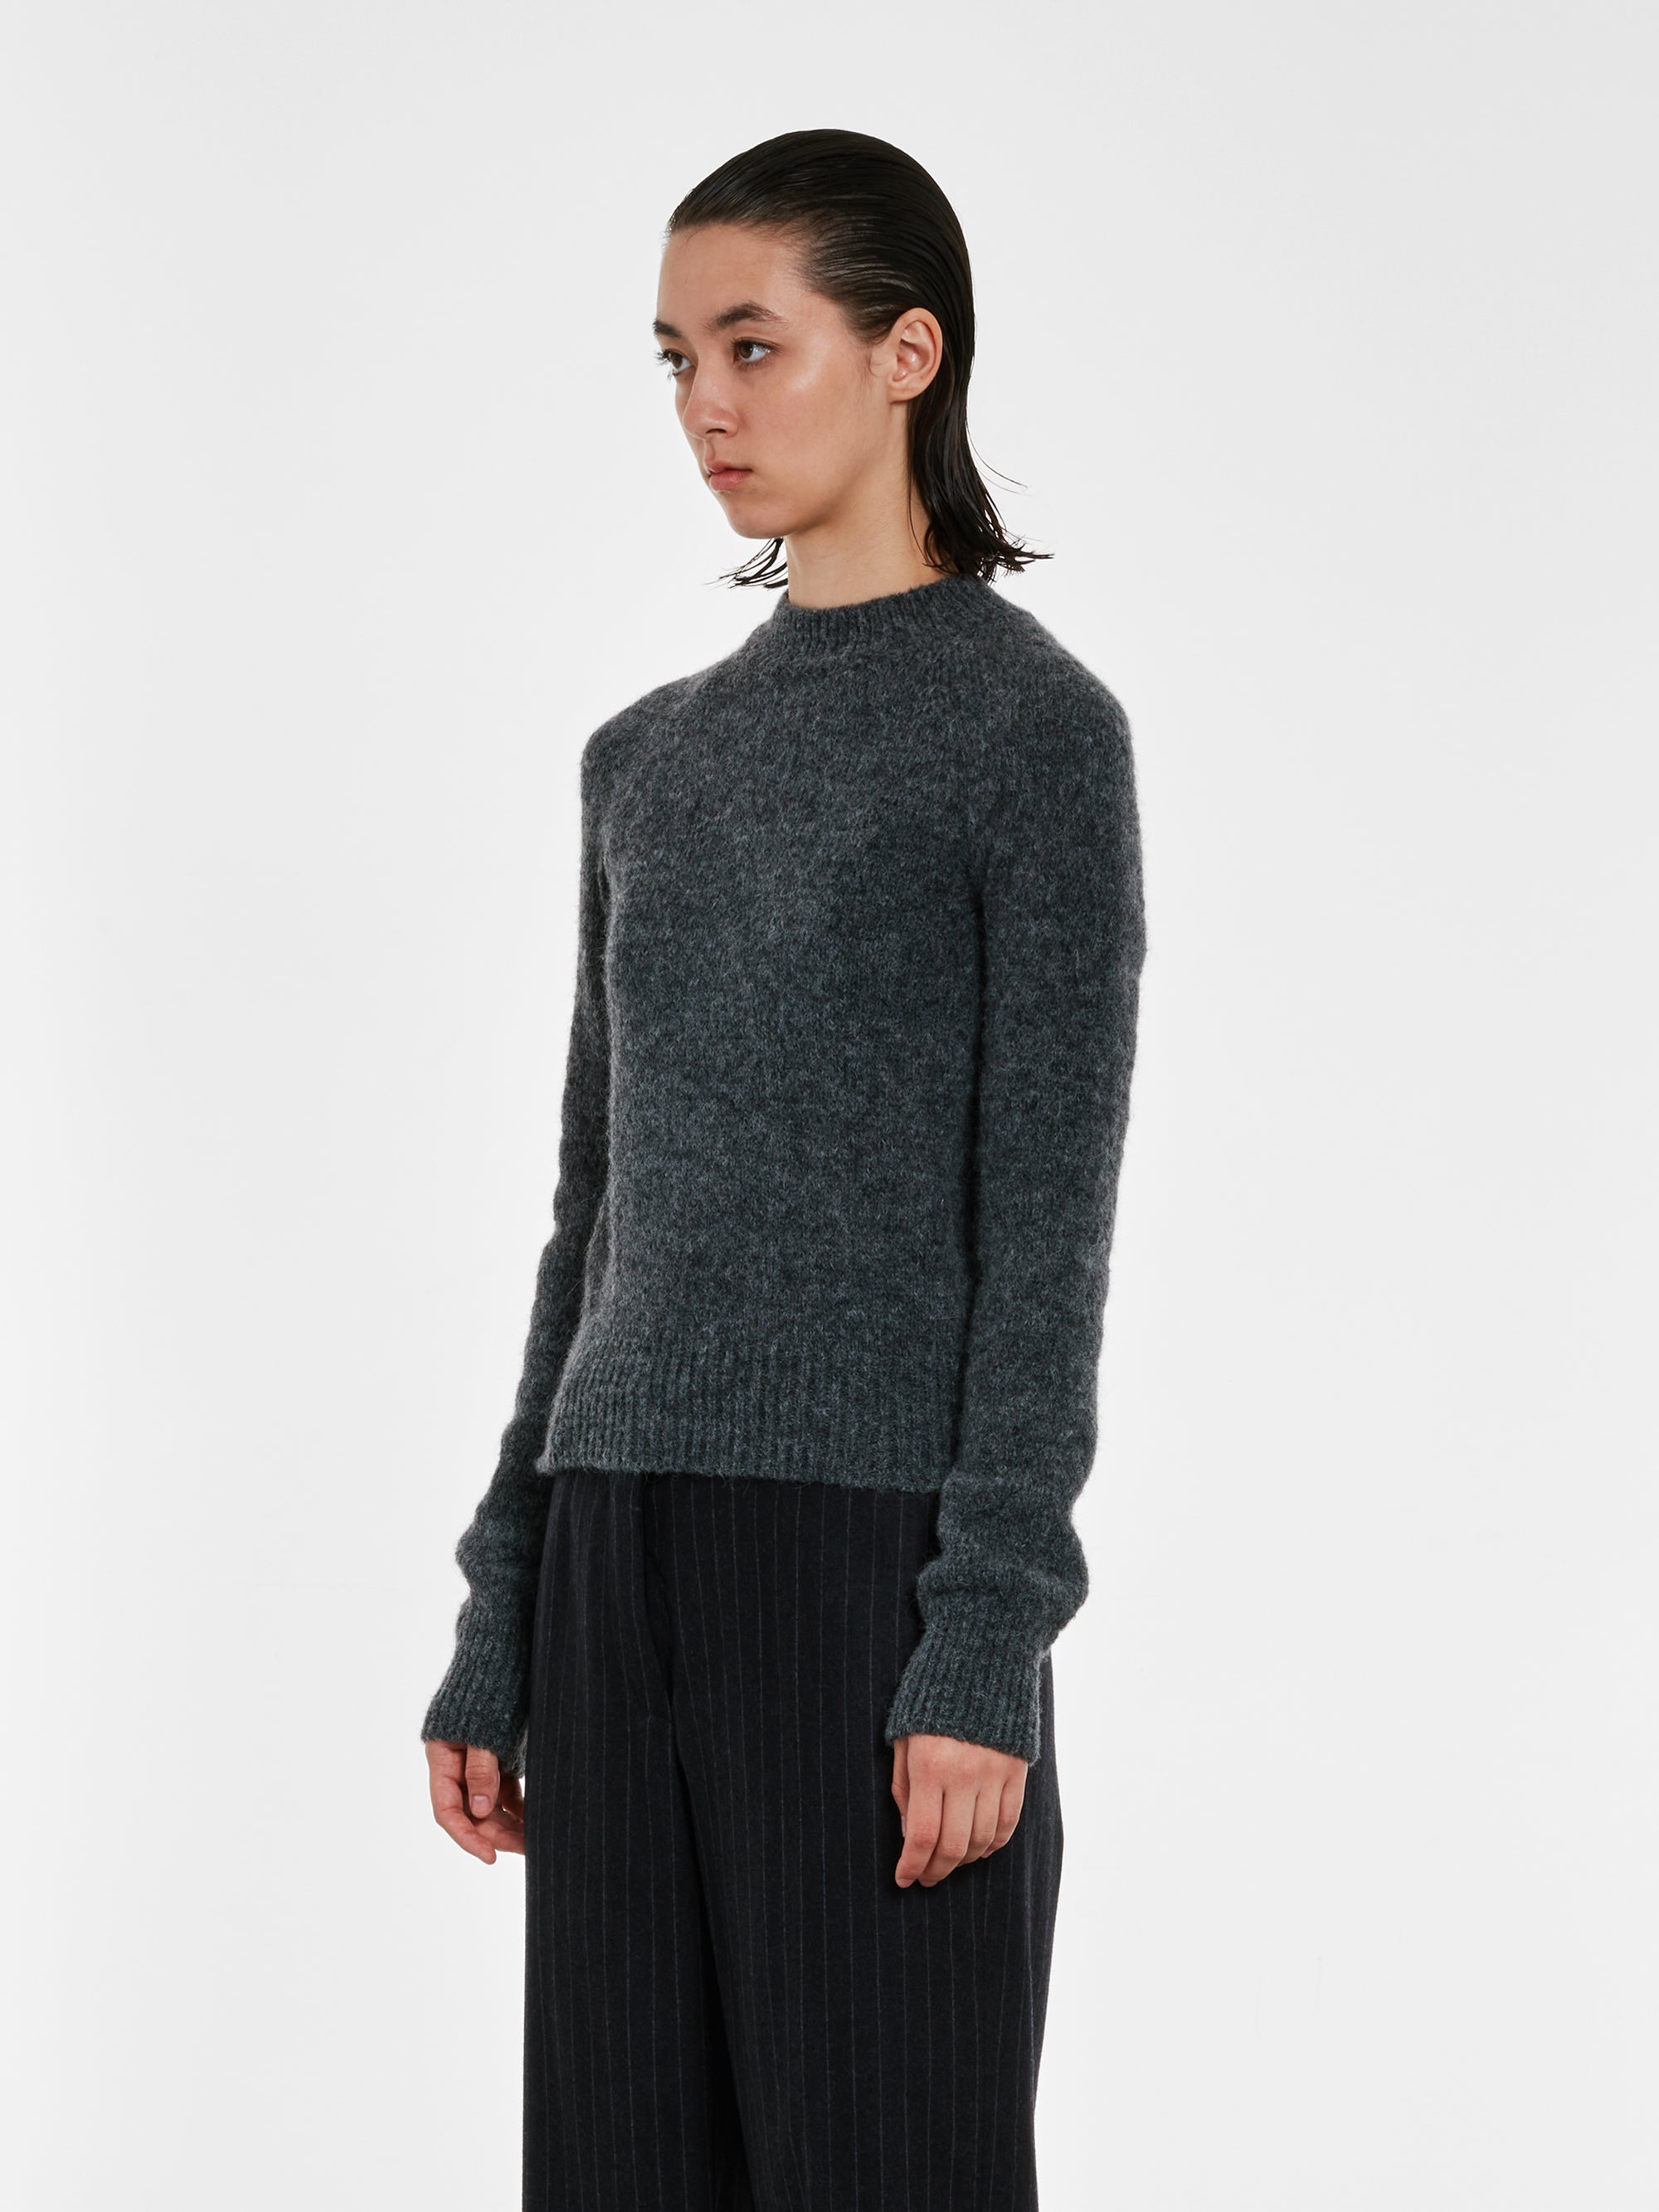 Dries Van Noten - Women’s Fitted Sweater - (Grey) view 3